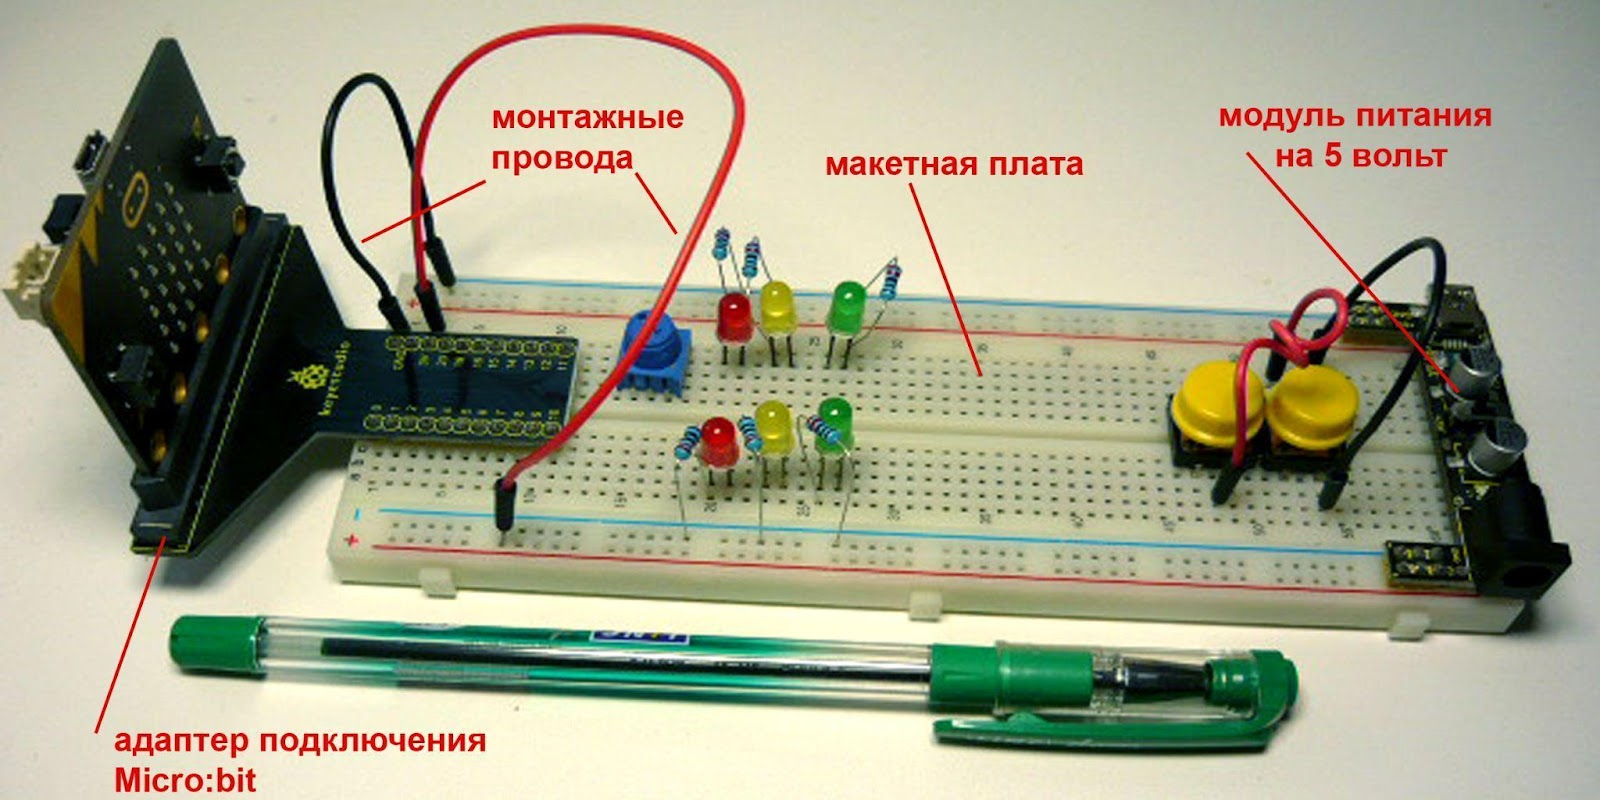 Рис. 5.2 Micro:bit с адаптером и дополнительные электронные компоненты на макетной плате